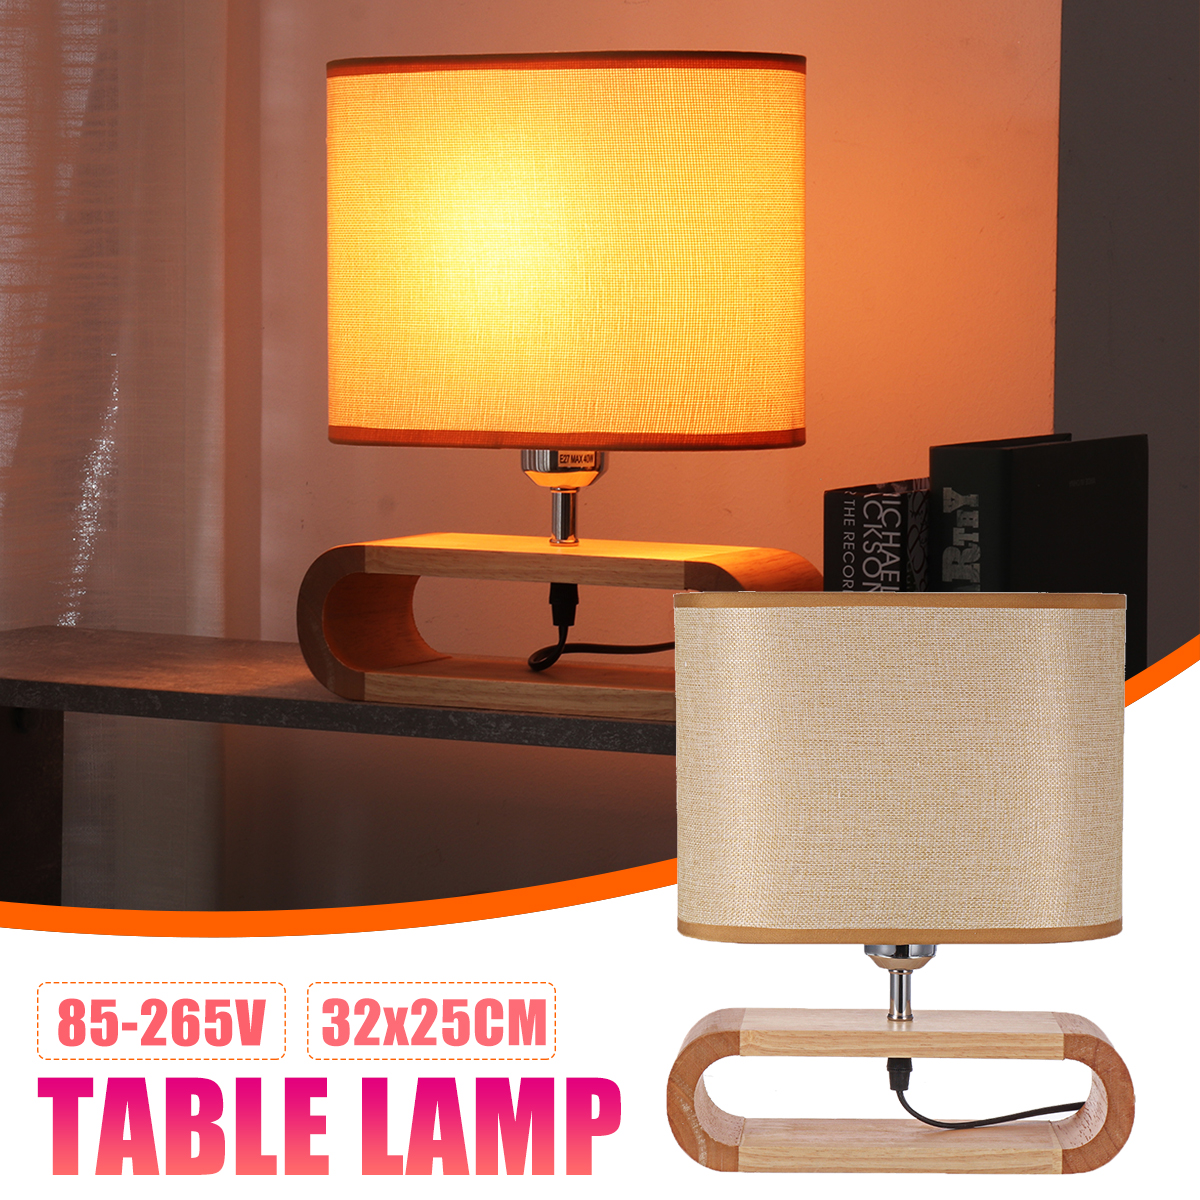 Wooden-Modern-Table-Lamp-Timber-Bedside-Lighting-Desk-Reading-Light-Brown-White-85-265V-1744461-2